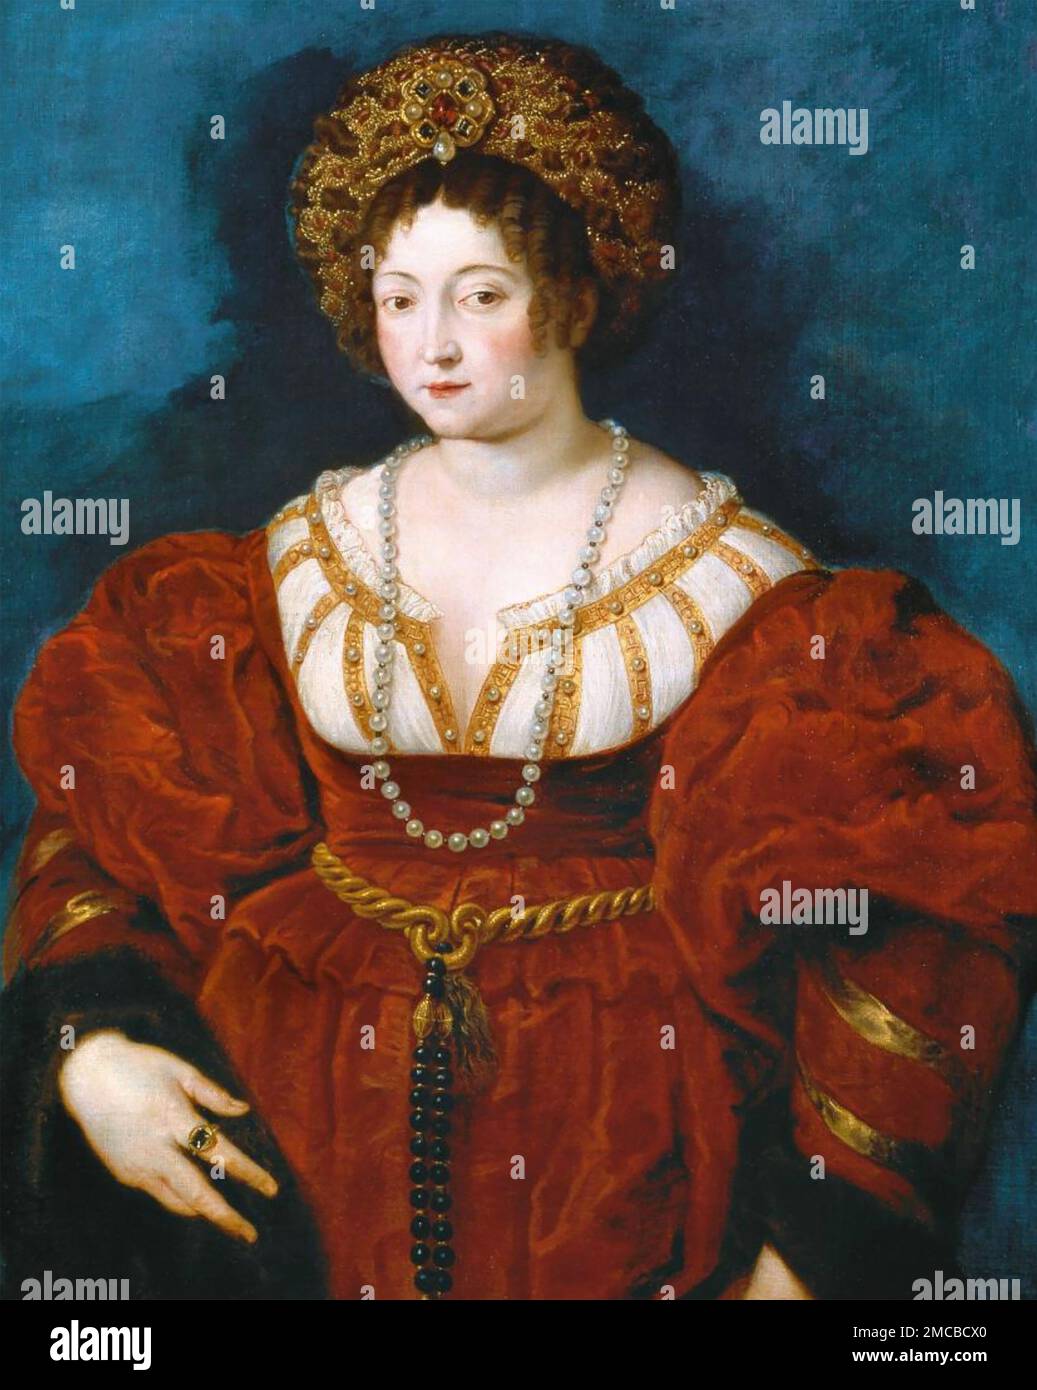 Isabella d'ESTE (1474-1539) Marchesa di Mantova e figura di spicco del Rinascimento italiano Foto Stock